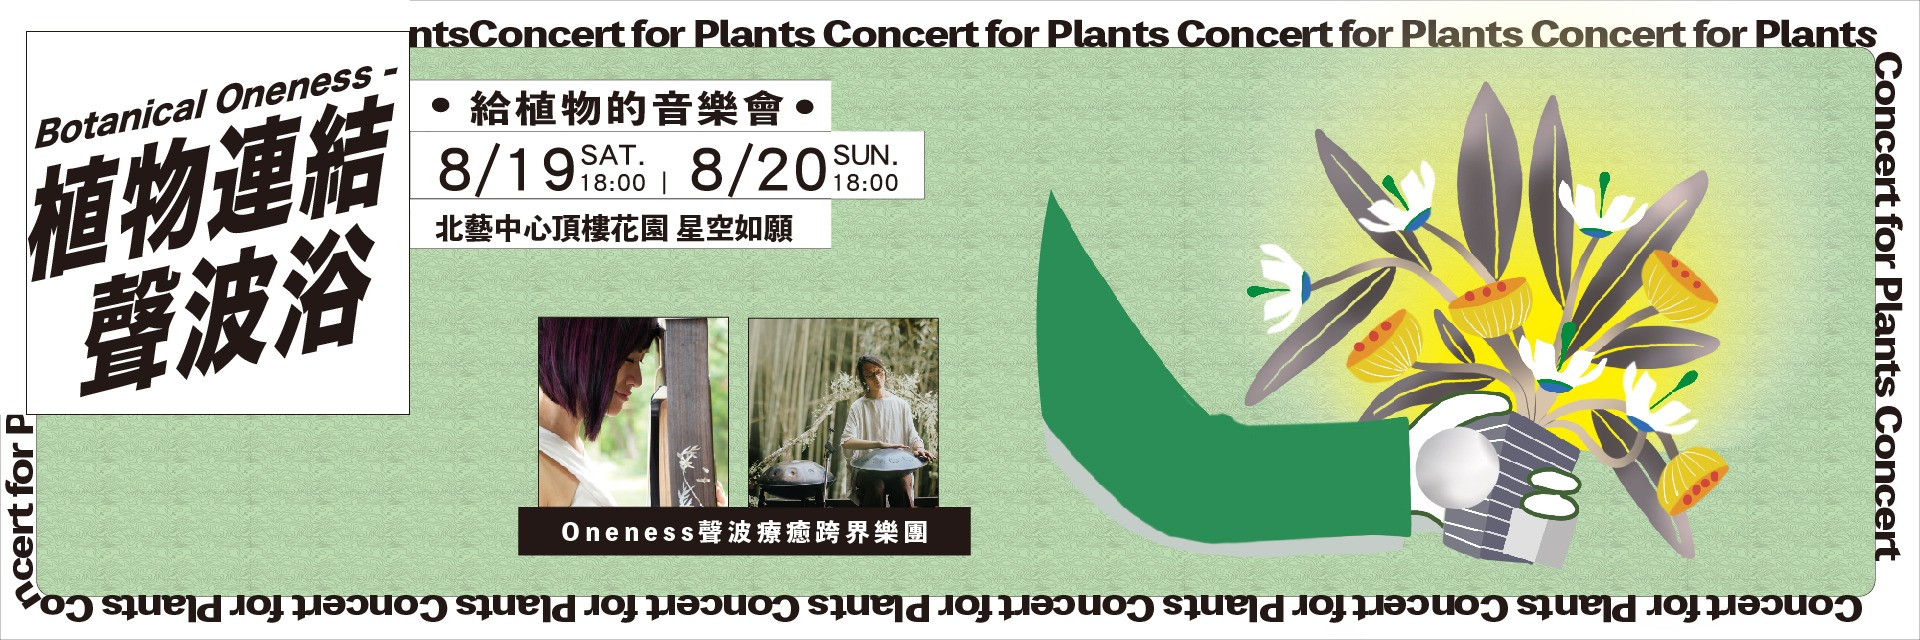 給植物的音樂會系列：《植物連結聲波浴》 主要圖片